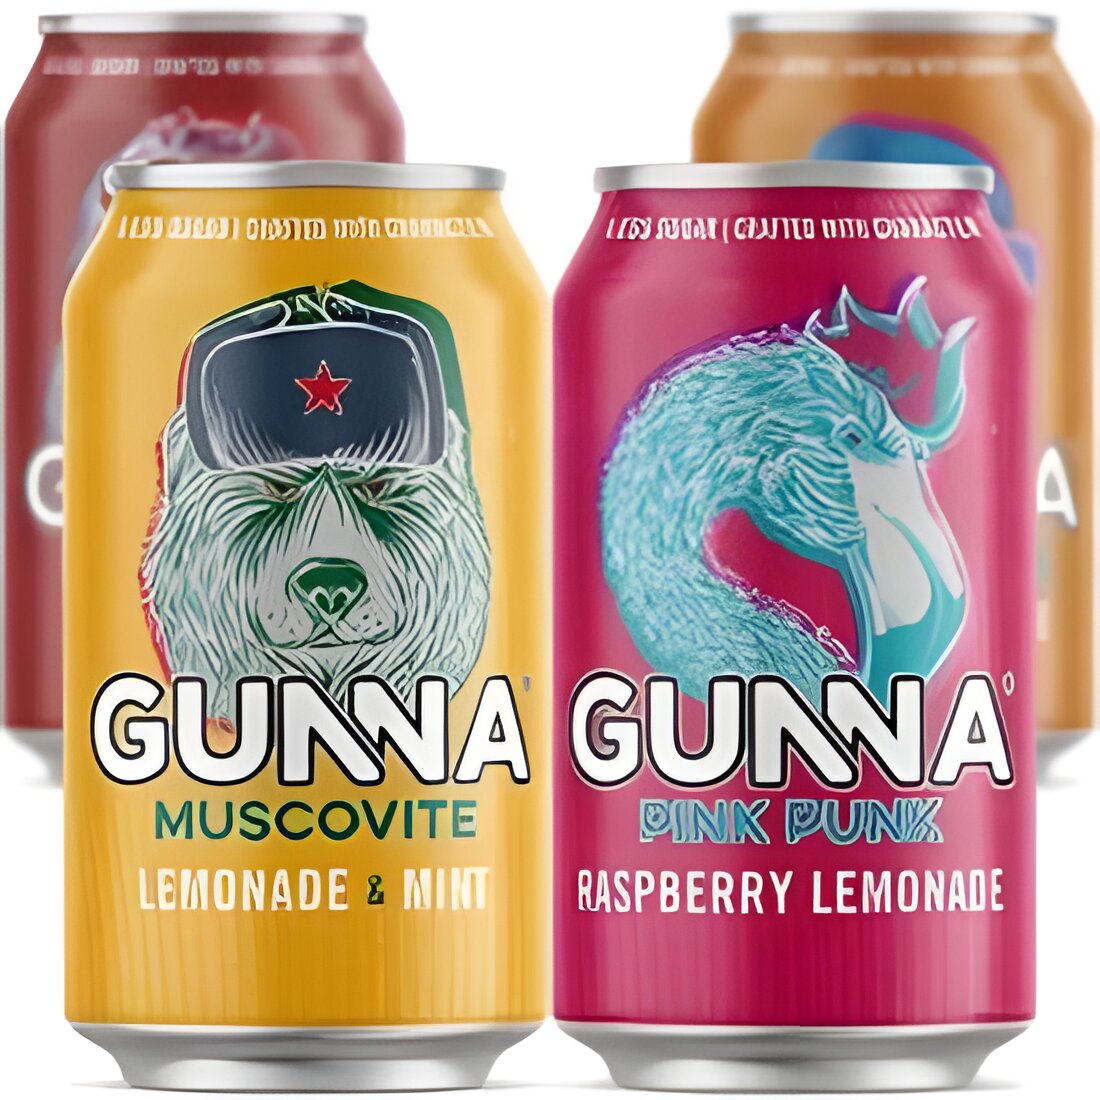 Free Gunna Pink Punk Raspberry Lemonade & Gunna Muscovite Lemonade & Mint